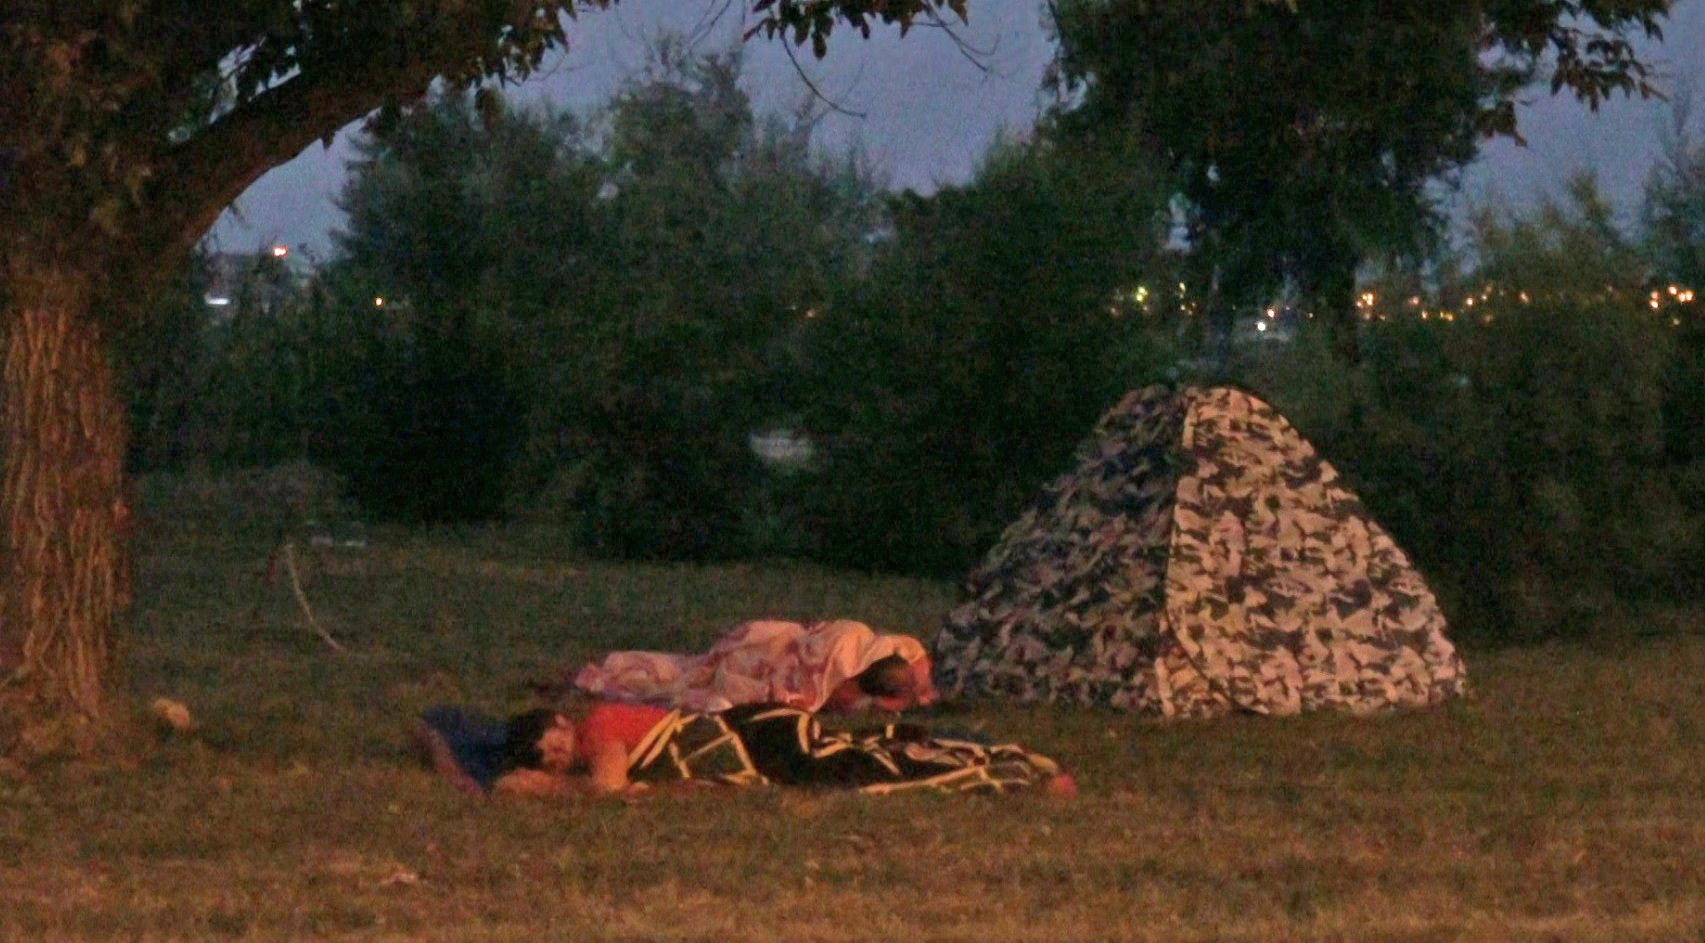 Turistii fara cazare au adoptat stilul boschetar: somn direct pe iarba, pe un maldar de haine